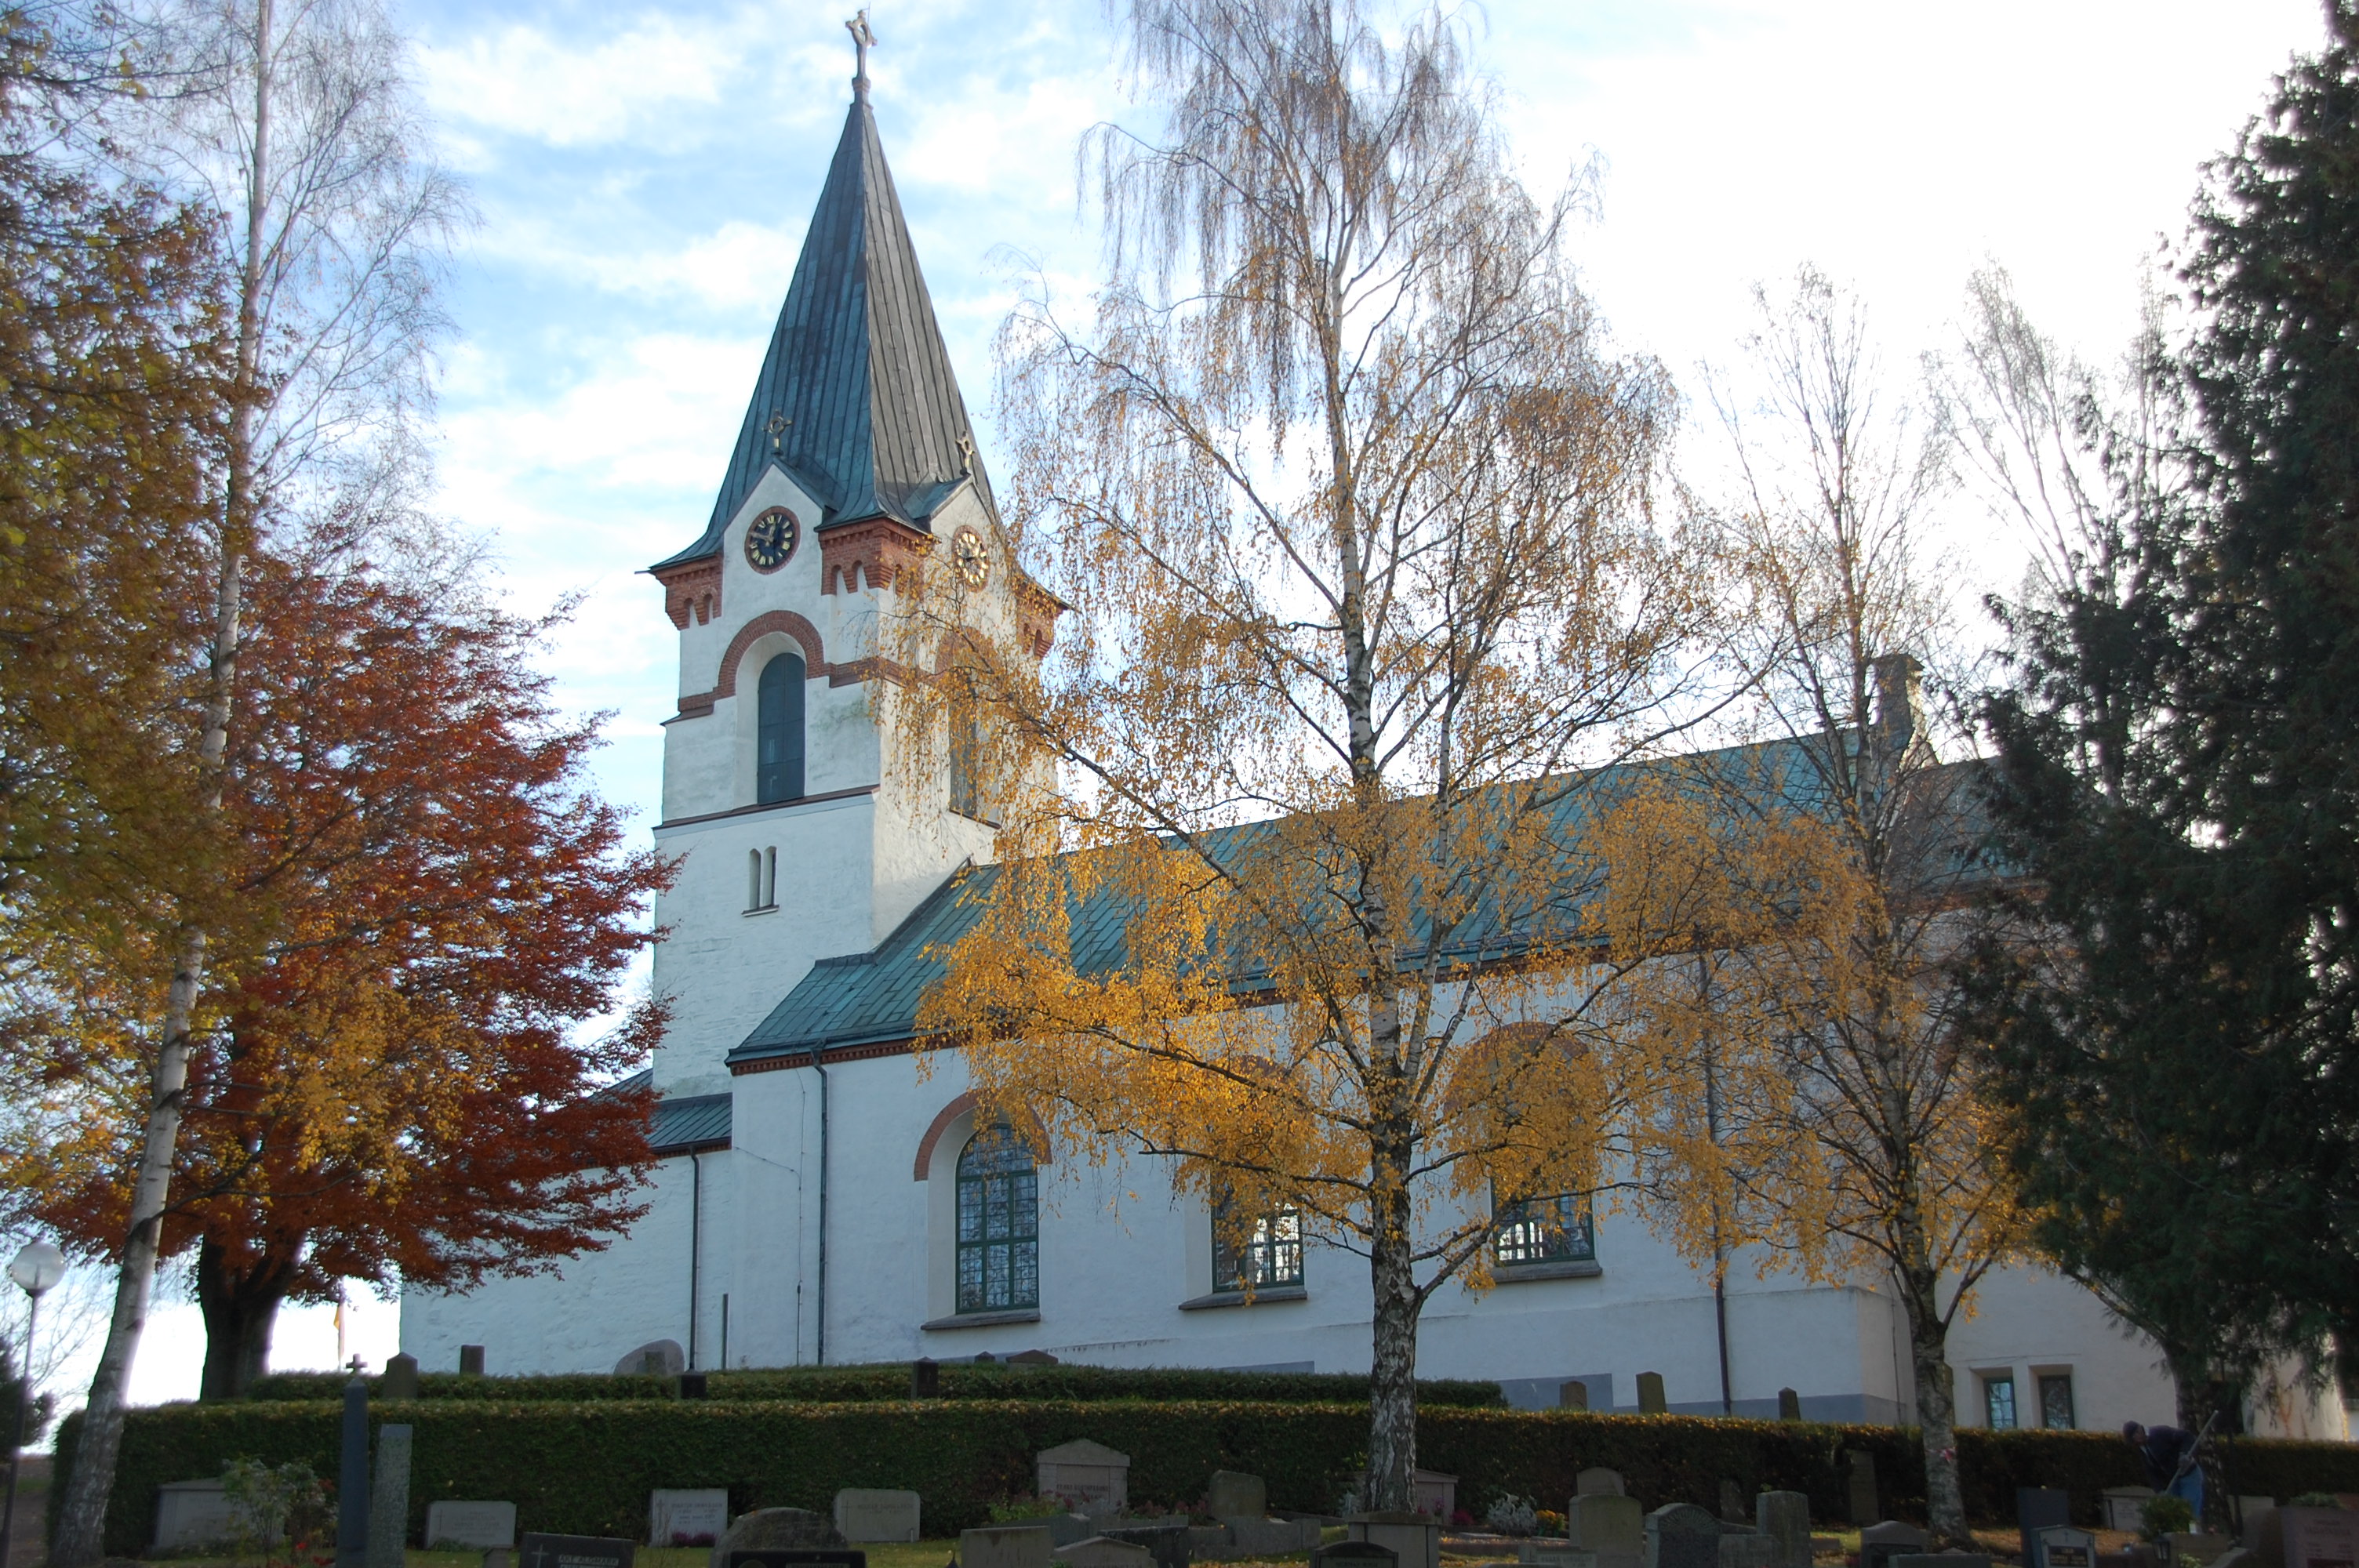 Ödeshögs kyrka, en vit kyrka med koppartak. Framför kyrkan finns gravvårdar på rad och träden skiftar i rött och gult.